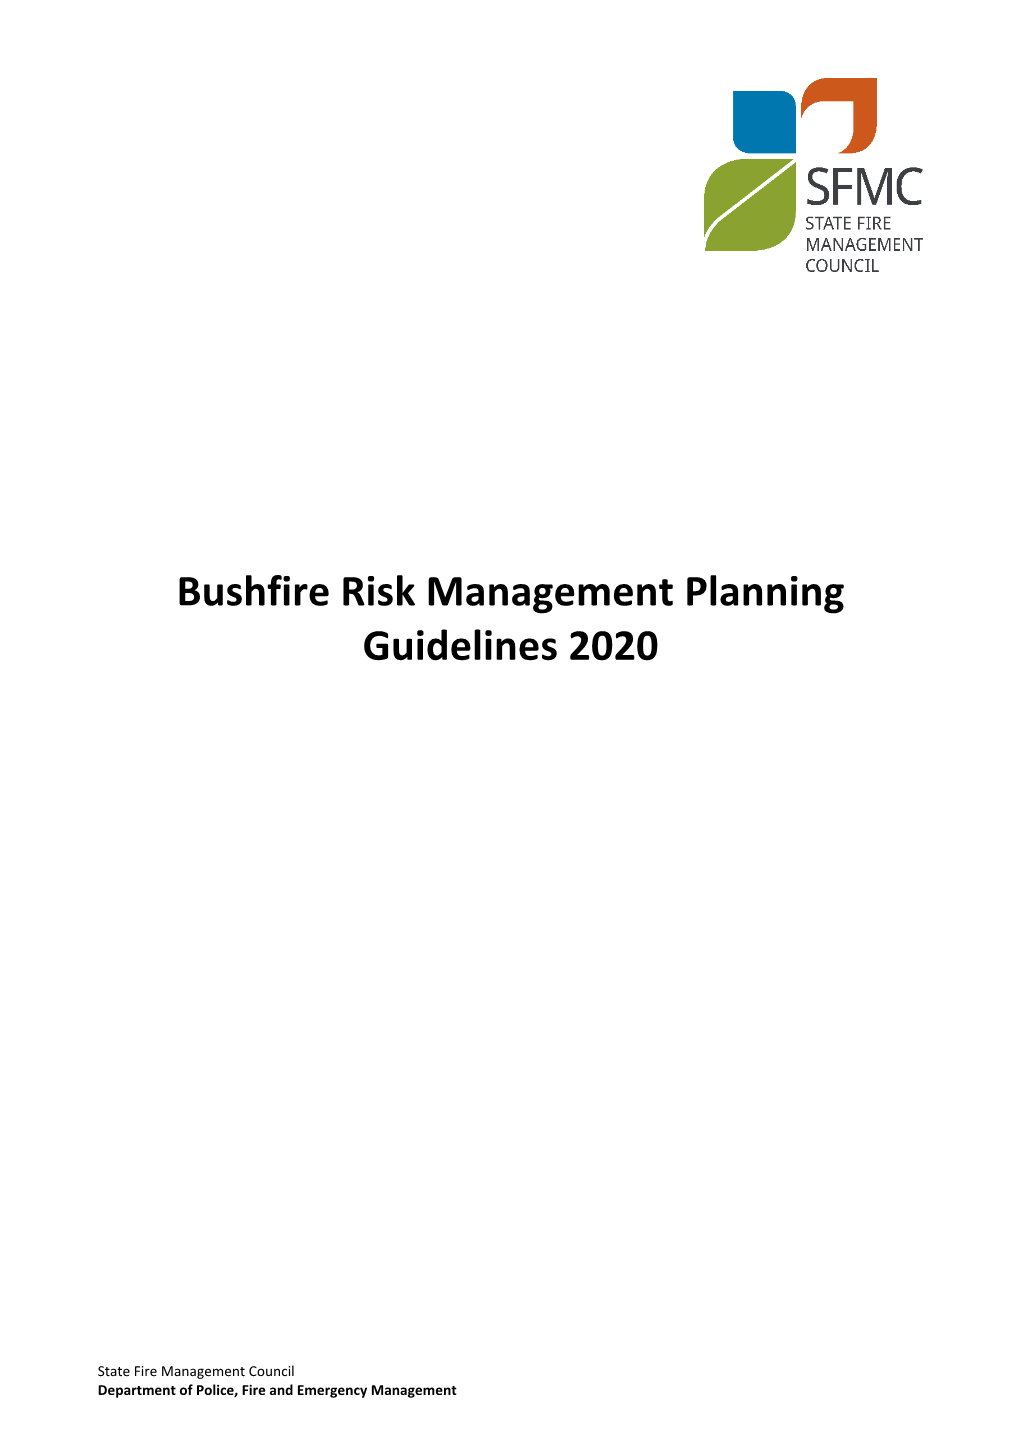 Bushfire Risk Management Planning Guidelines 2020